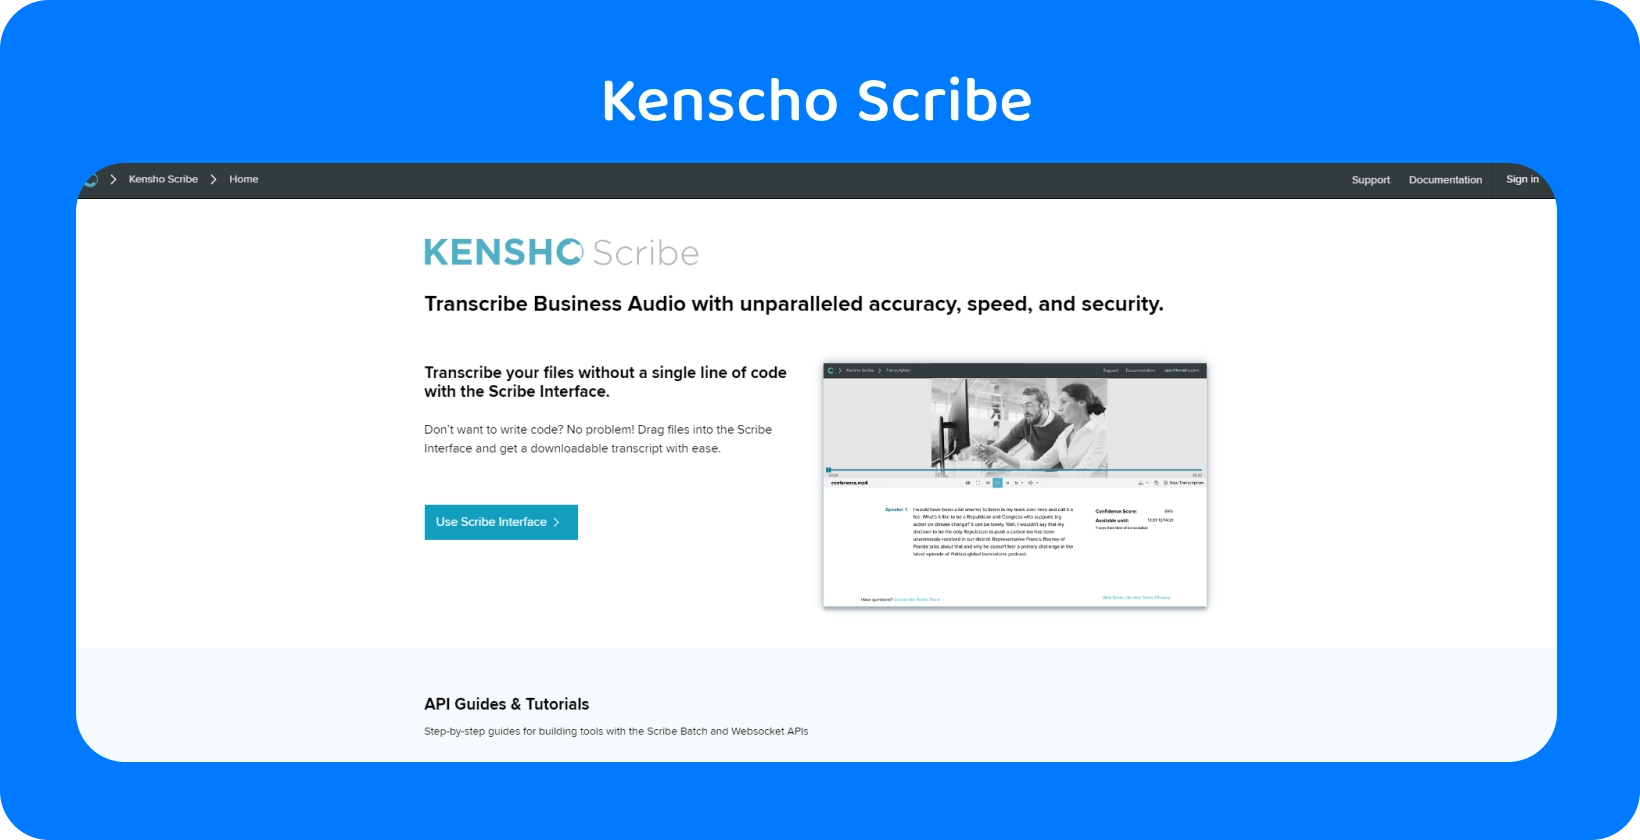 Kensho webbsida med "LÖSNINGAR" text, som erbjuder avancerade AI verktyg som kompletterar Word diktering.